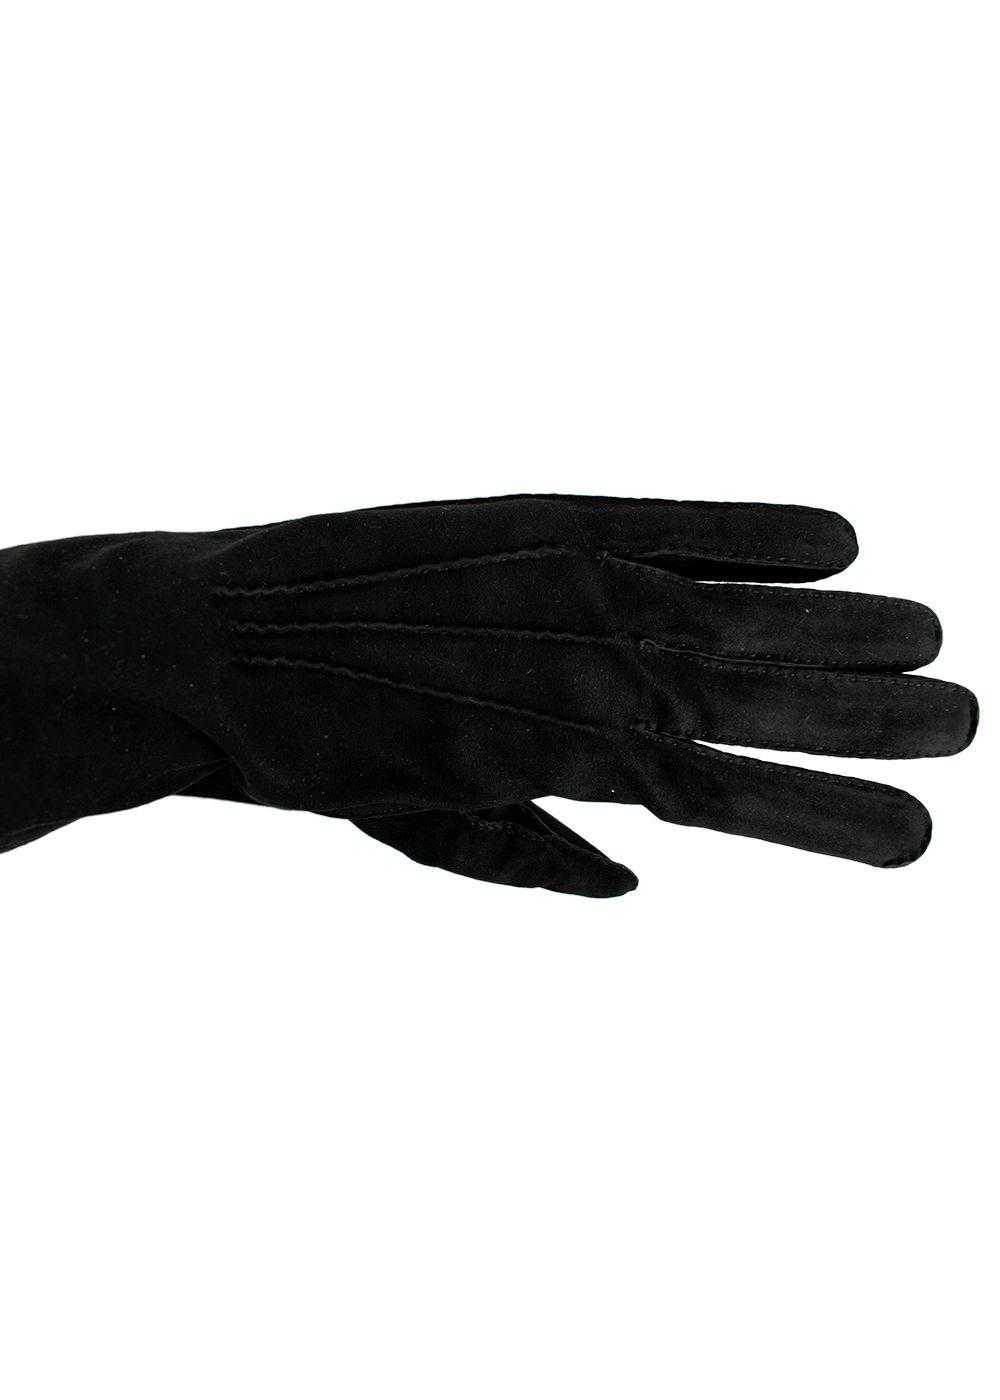 Managed by hewi Hermes Vintage Black Suede Gloves - image 5